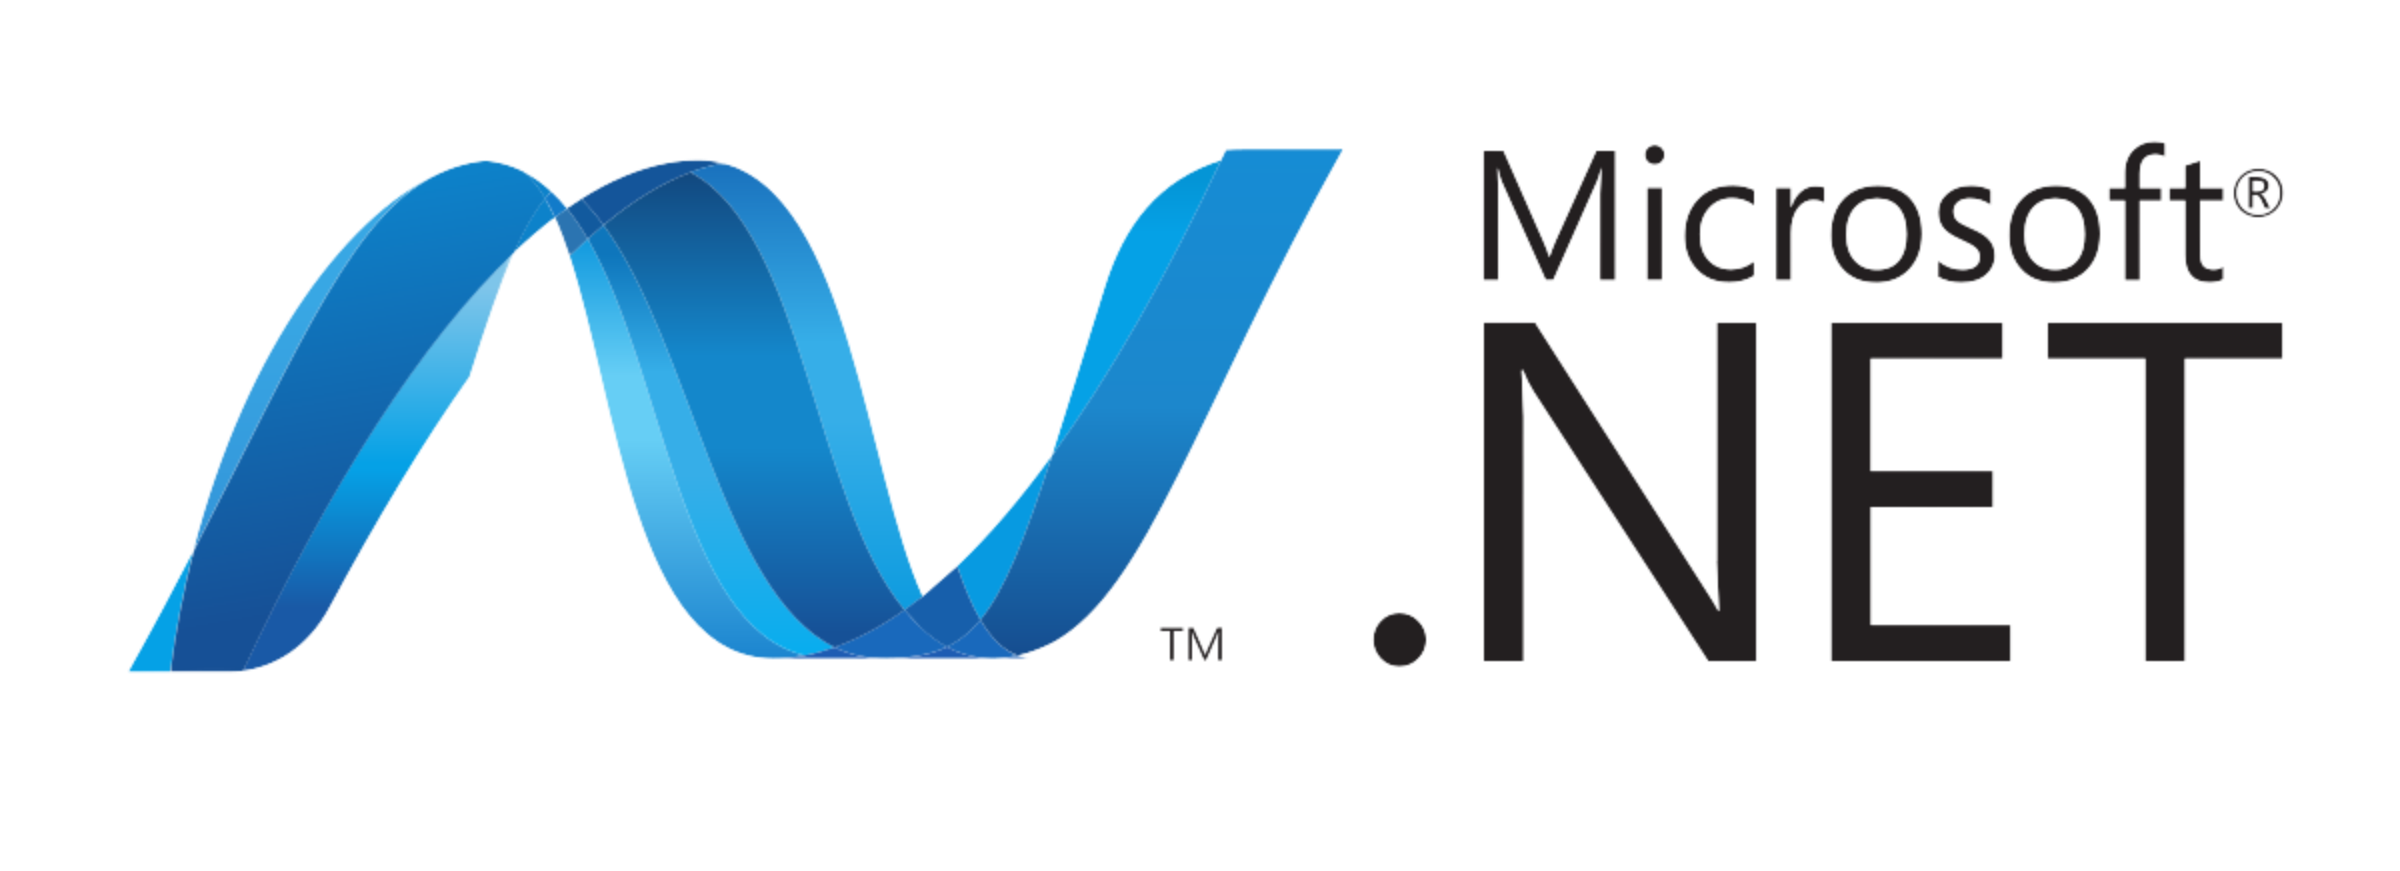 Lnsint net. Microsoft net логотип. Net Framework. Net Framework logo. Microsoft net Framework.